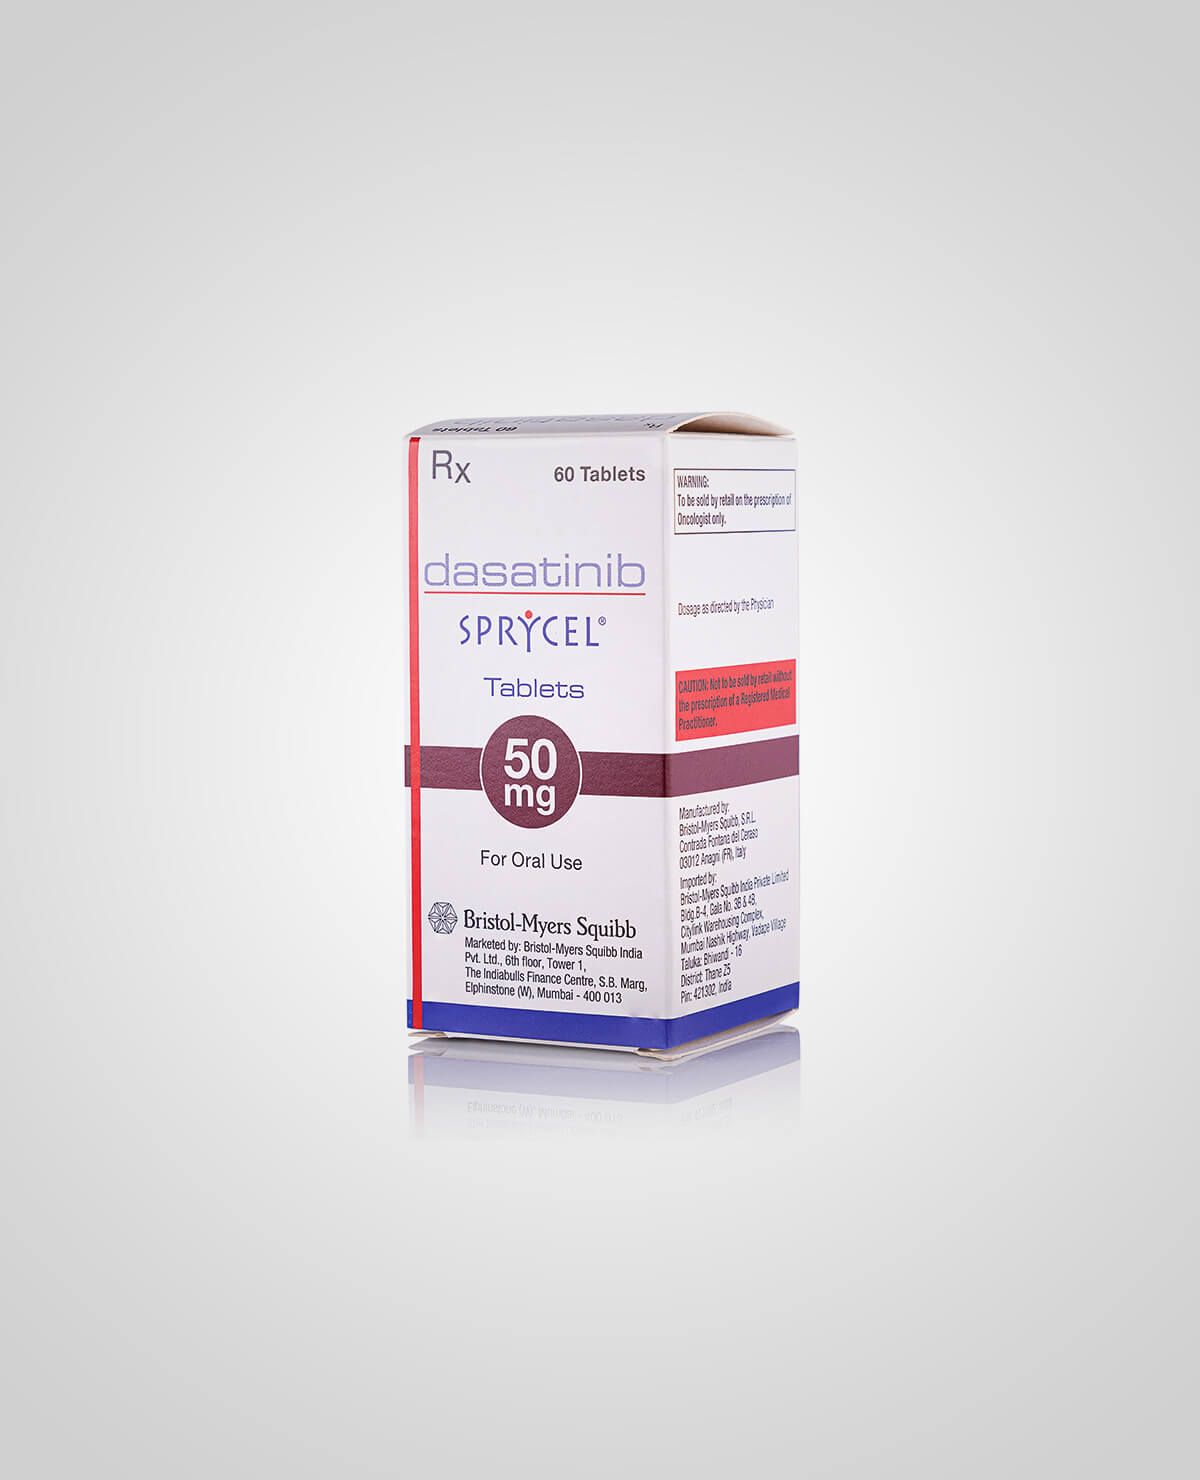 达沙替尼是一种靶向治疗白血病的药物